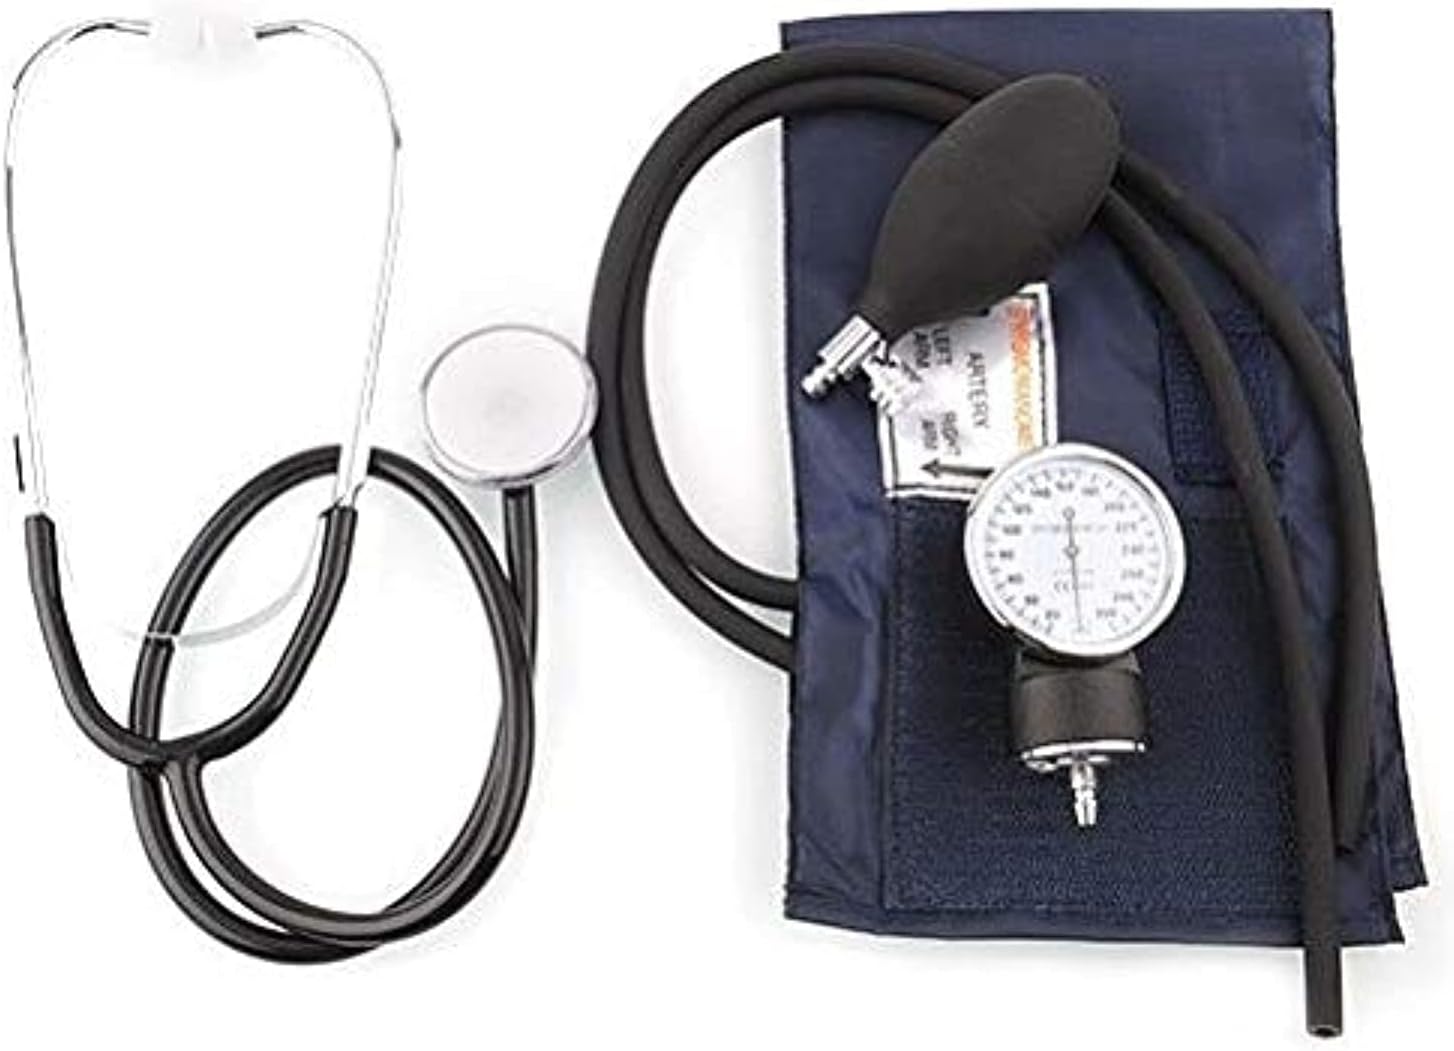 أجهزة قياس ضغط الدم من روميد مزودة بسماعة طبيب